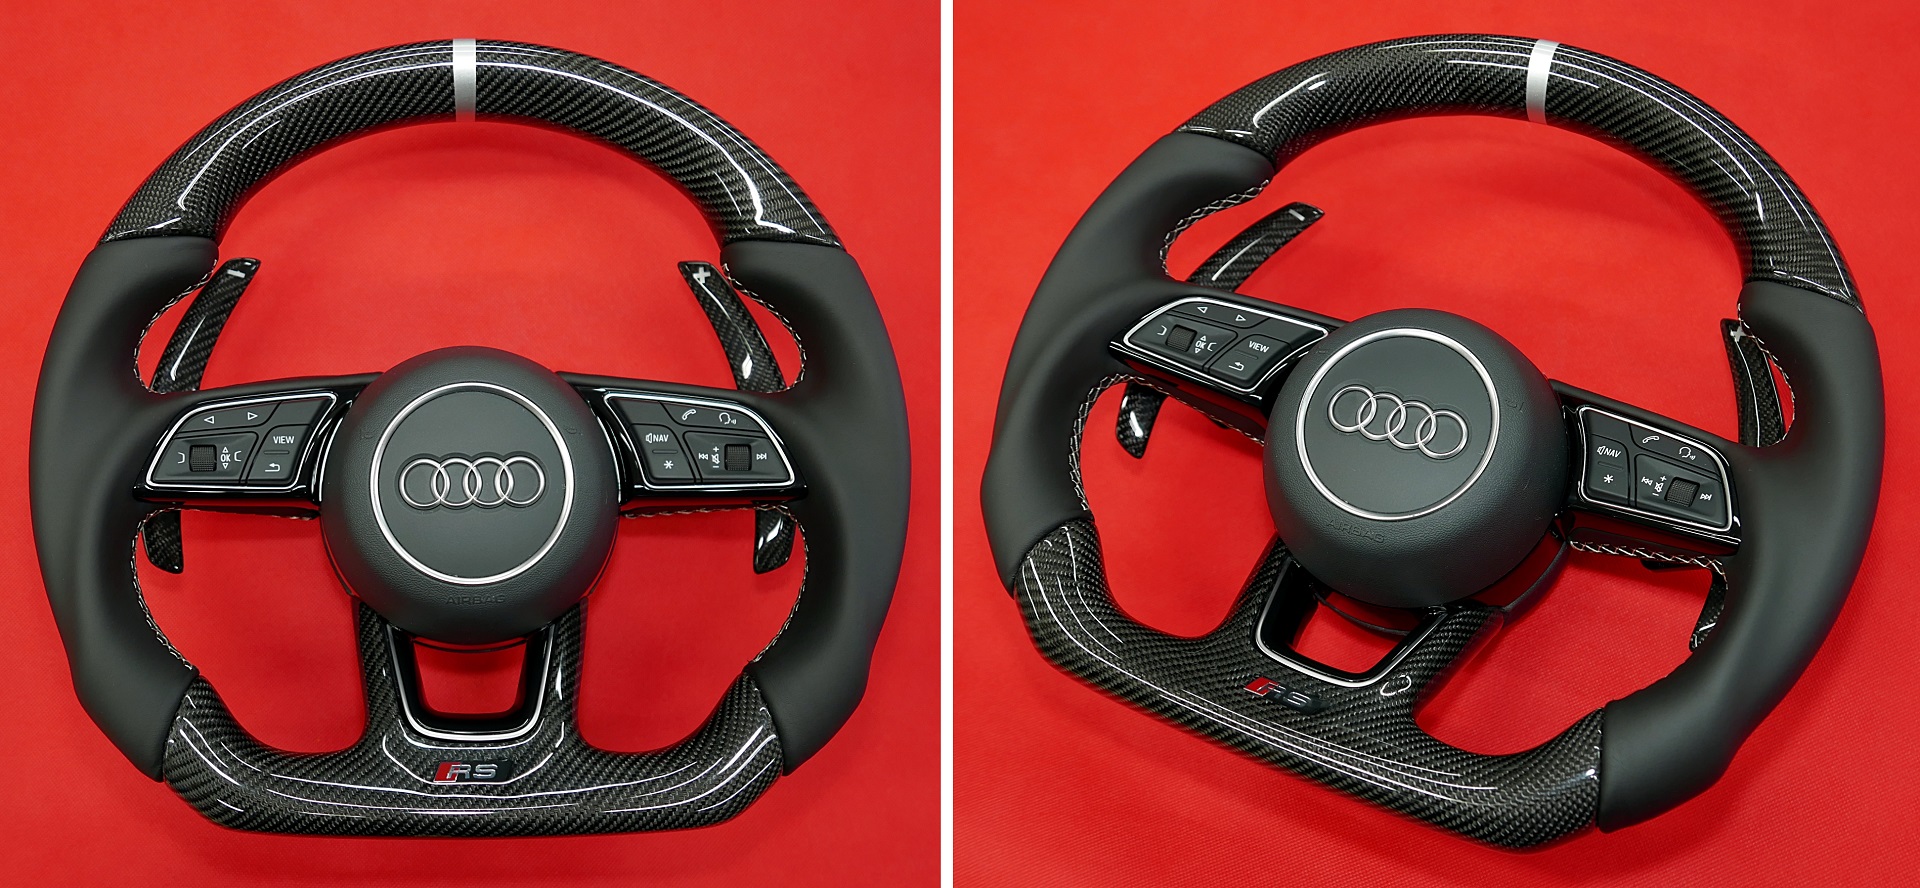 Kierownica Audi włókno węglowe carbon tuning modyfikacja zmiana kształtu obszywanie skórą